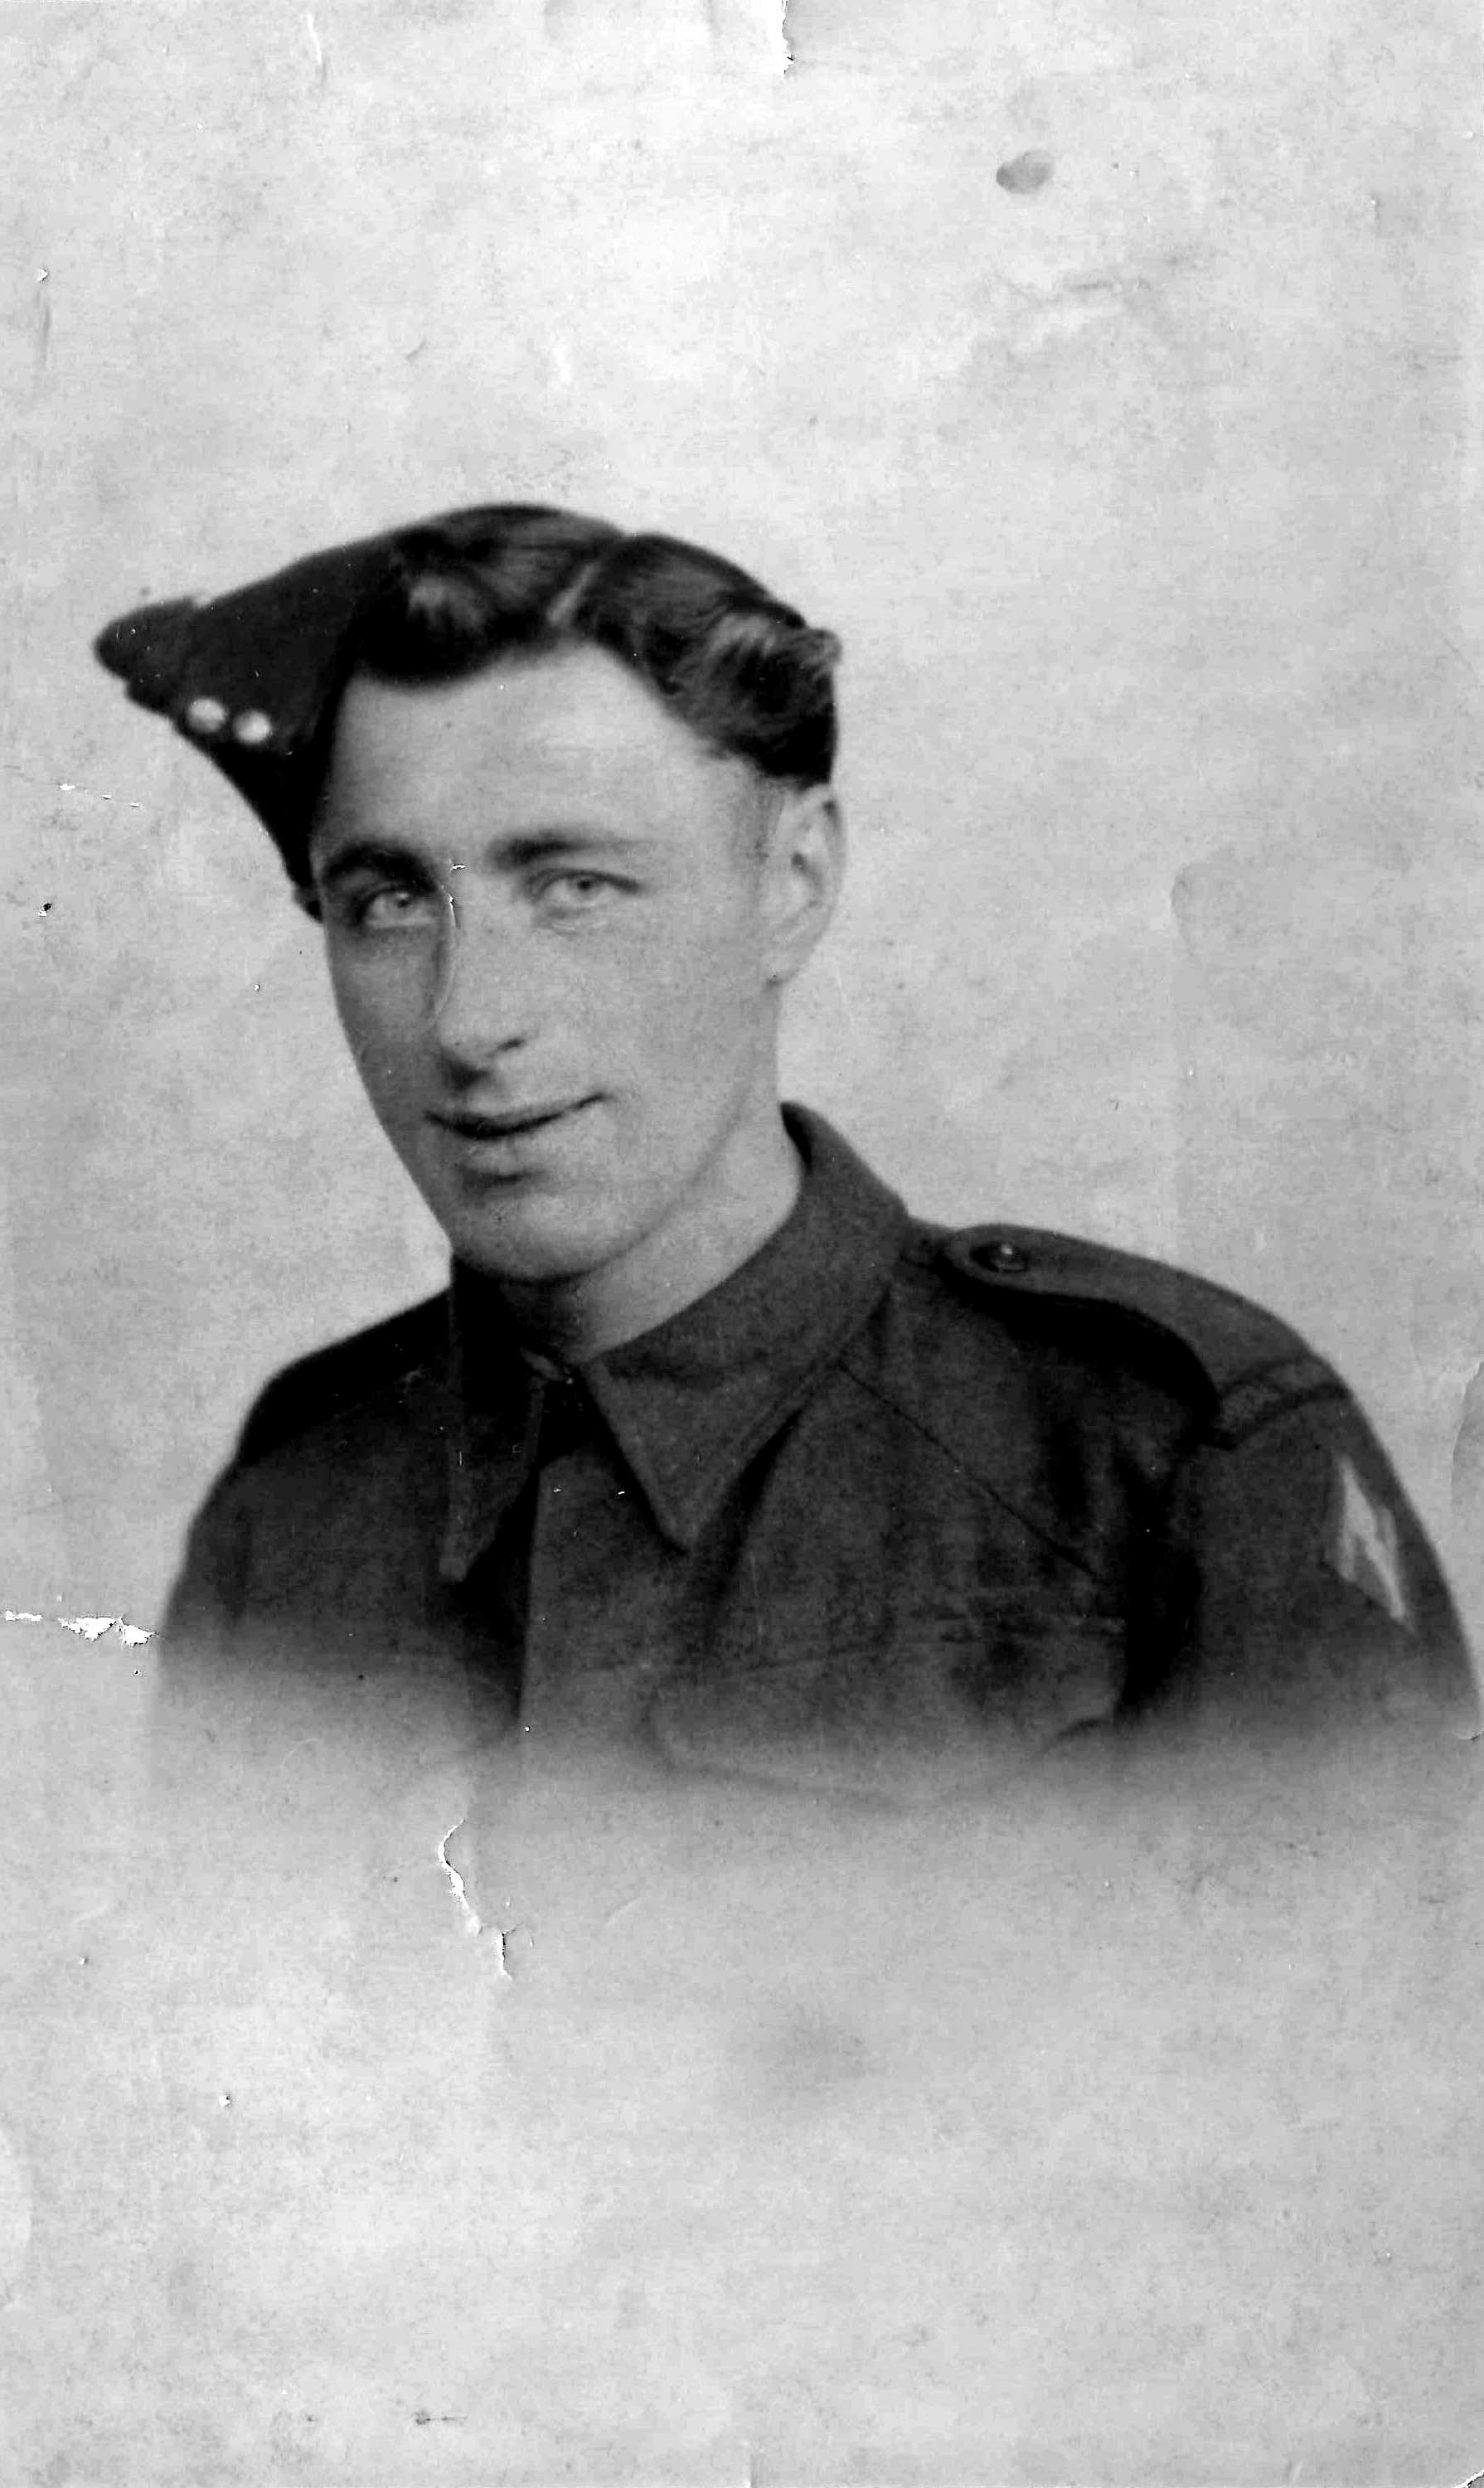 Portret van een Engelse militair. De foto is afgedrukt in maart 1944 met achterop de tekst: “I hope you like it”